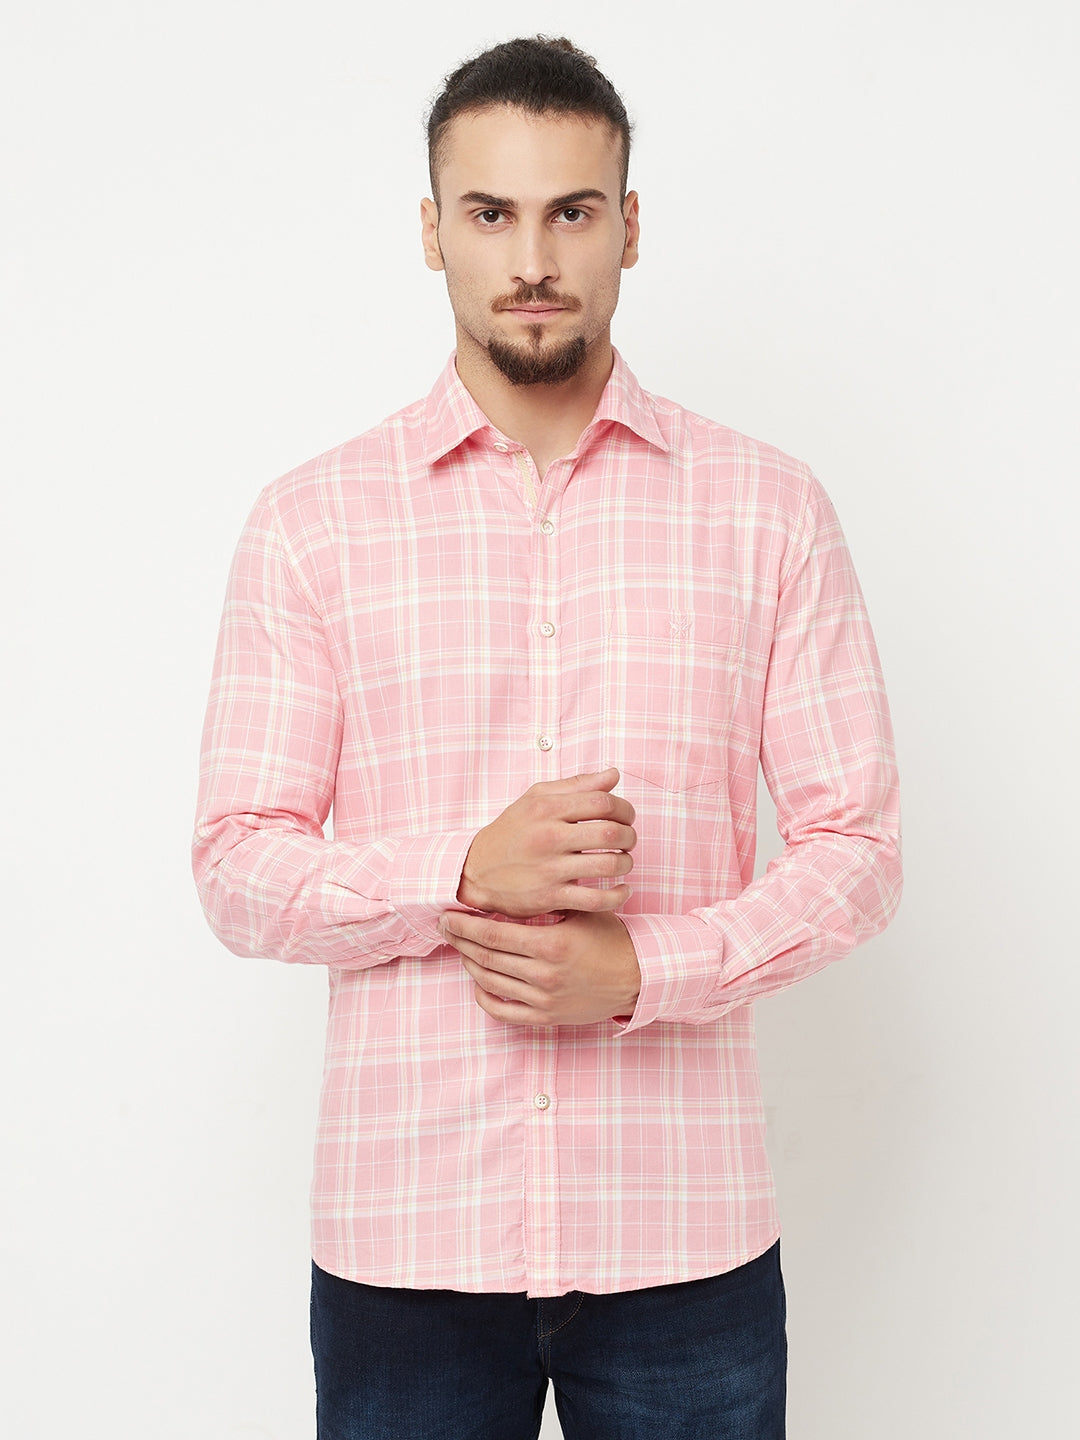 Pink Checked Casual Shirt - Men Shirts